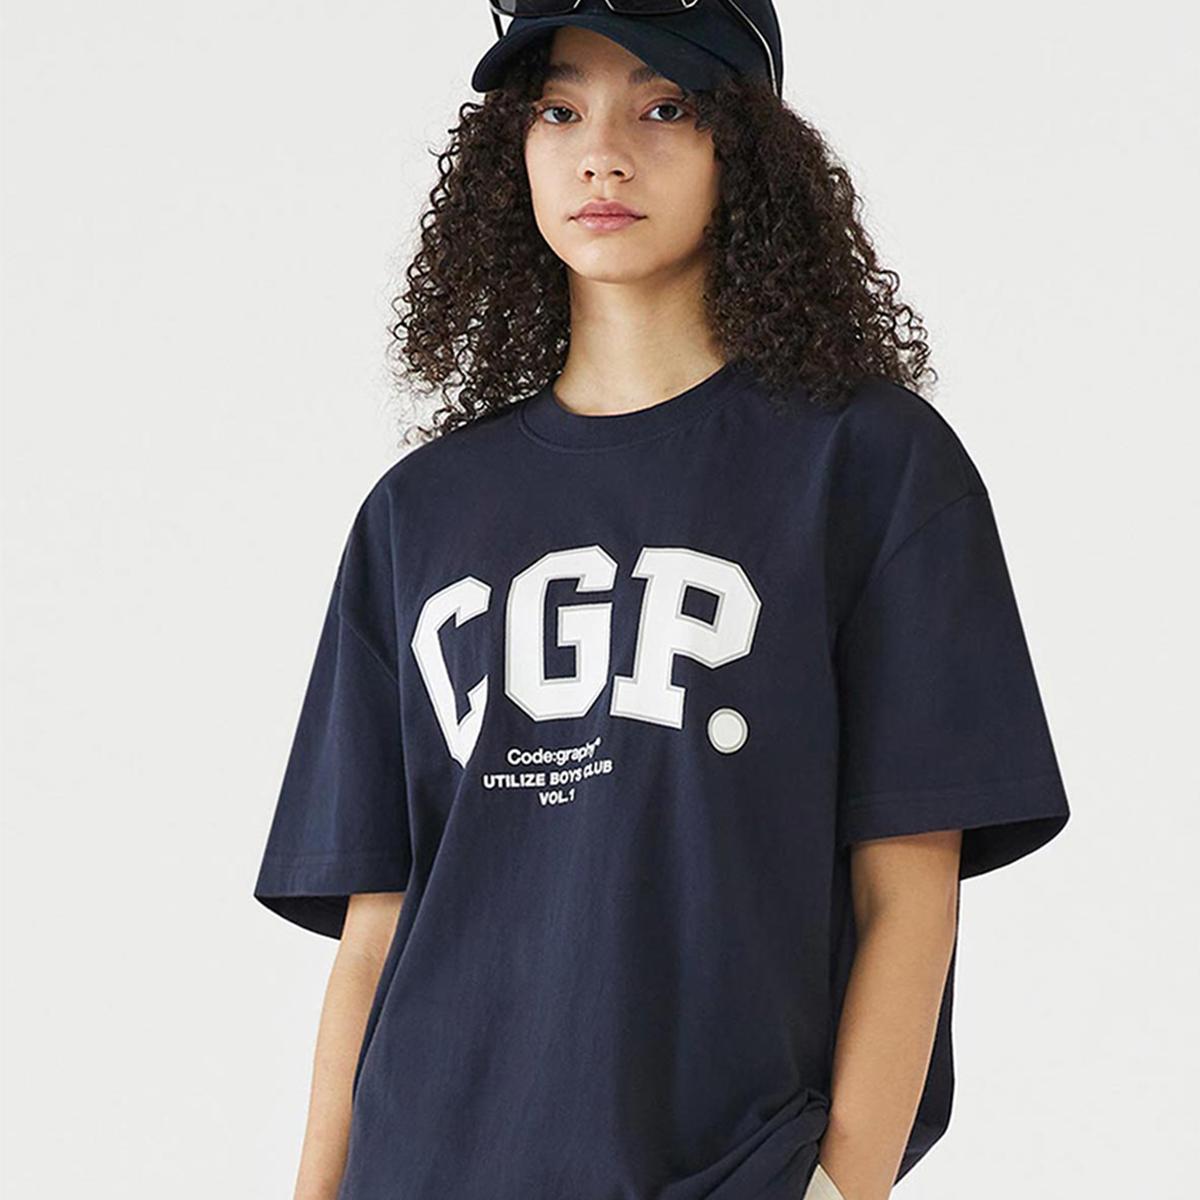 弧形CGP LOGO短袖T恤